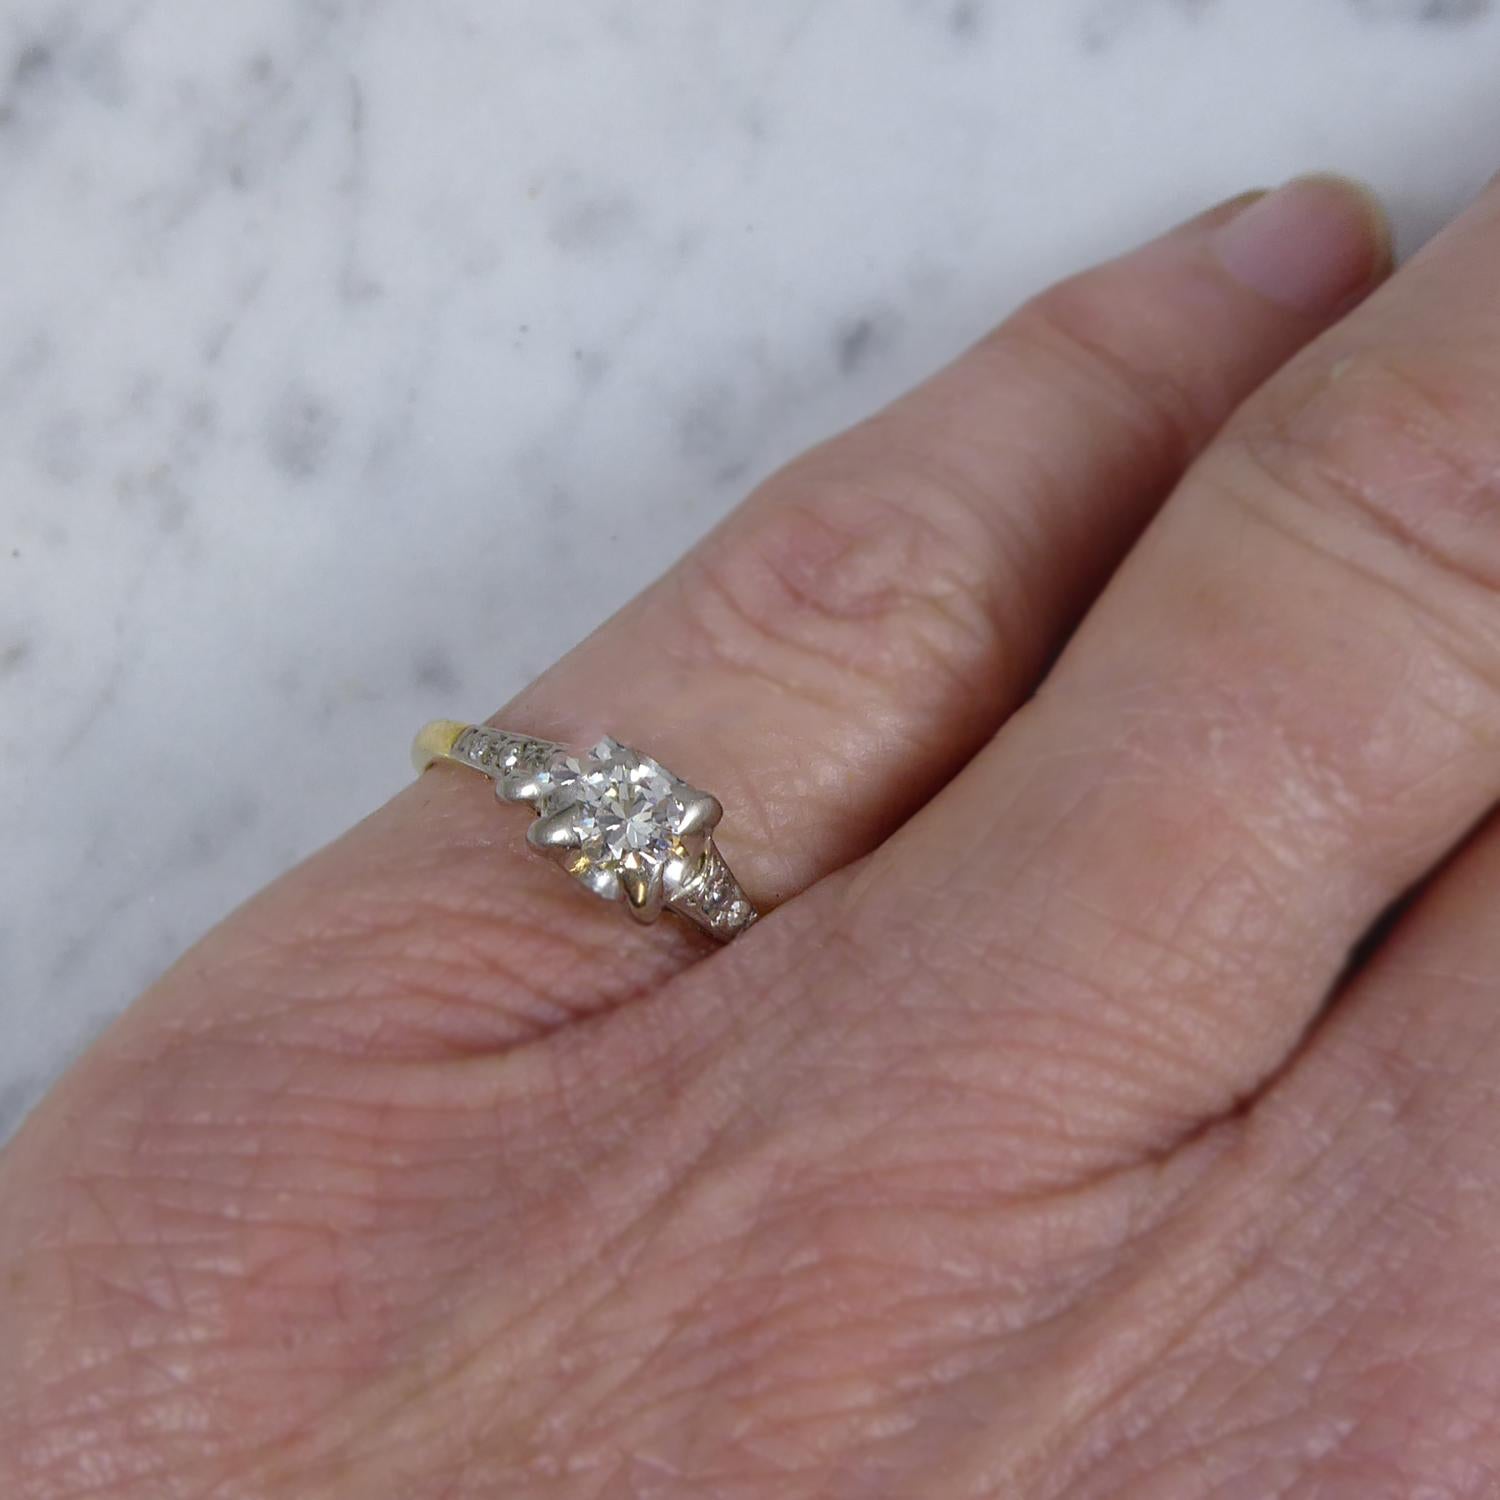 Women's Vintage Solitaire Diamond Ring, Four Claw Set, Diamond Set Shoulders